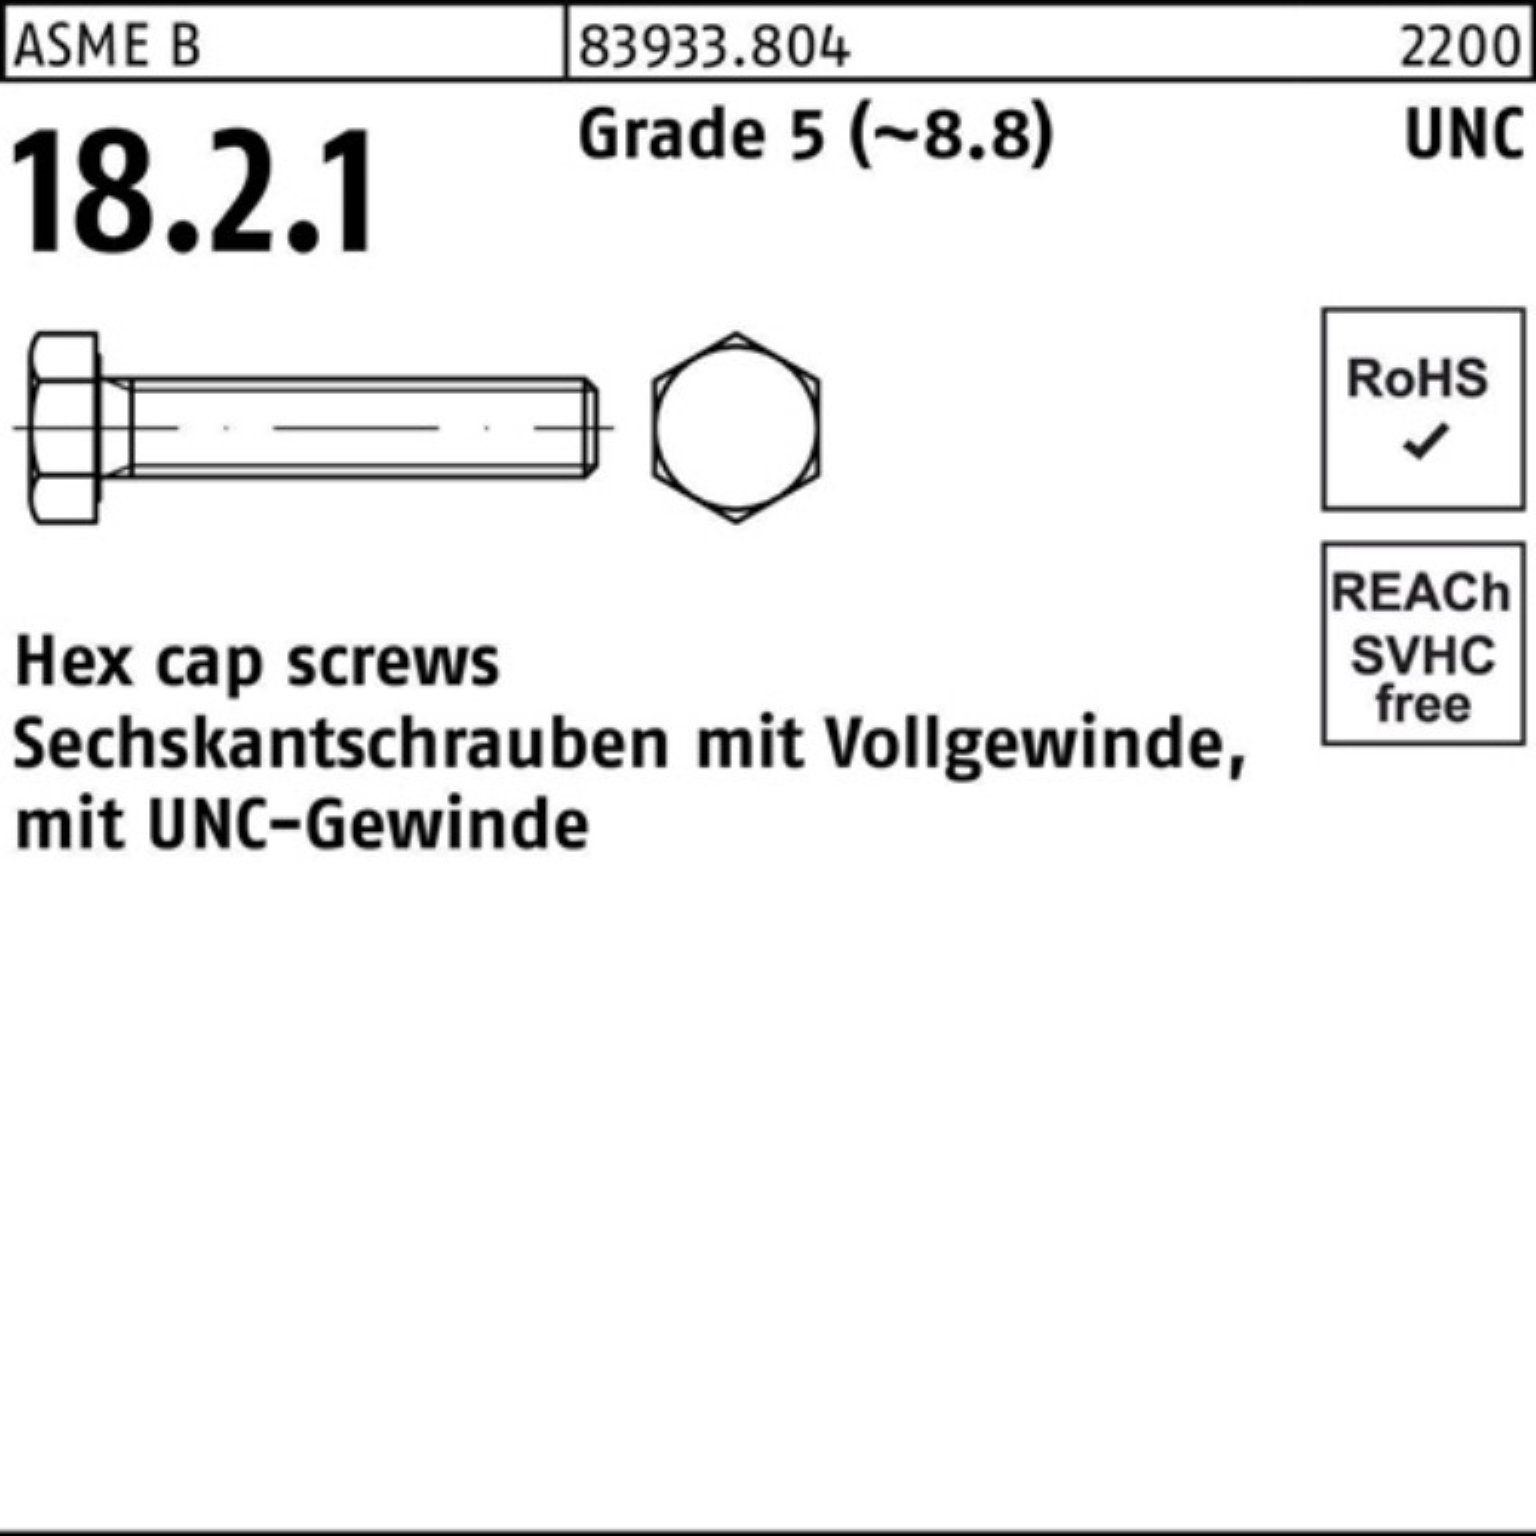 Reyher Sechskantschraube 100er Pack Sechskantschraube R 83933 UNC-Gewinde VG 1/4x 1/2 Grade 5